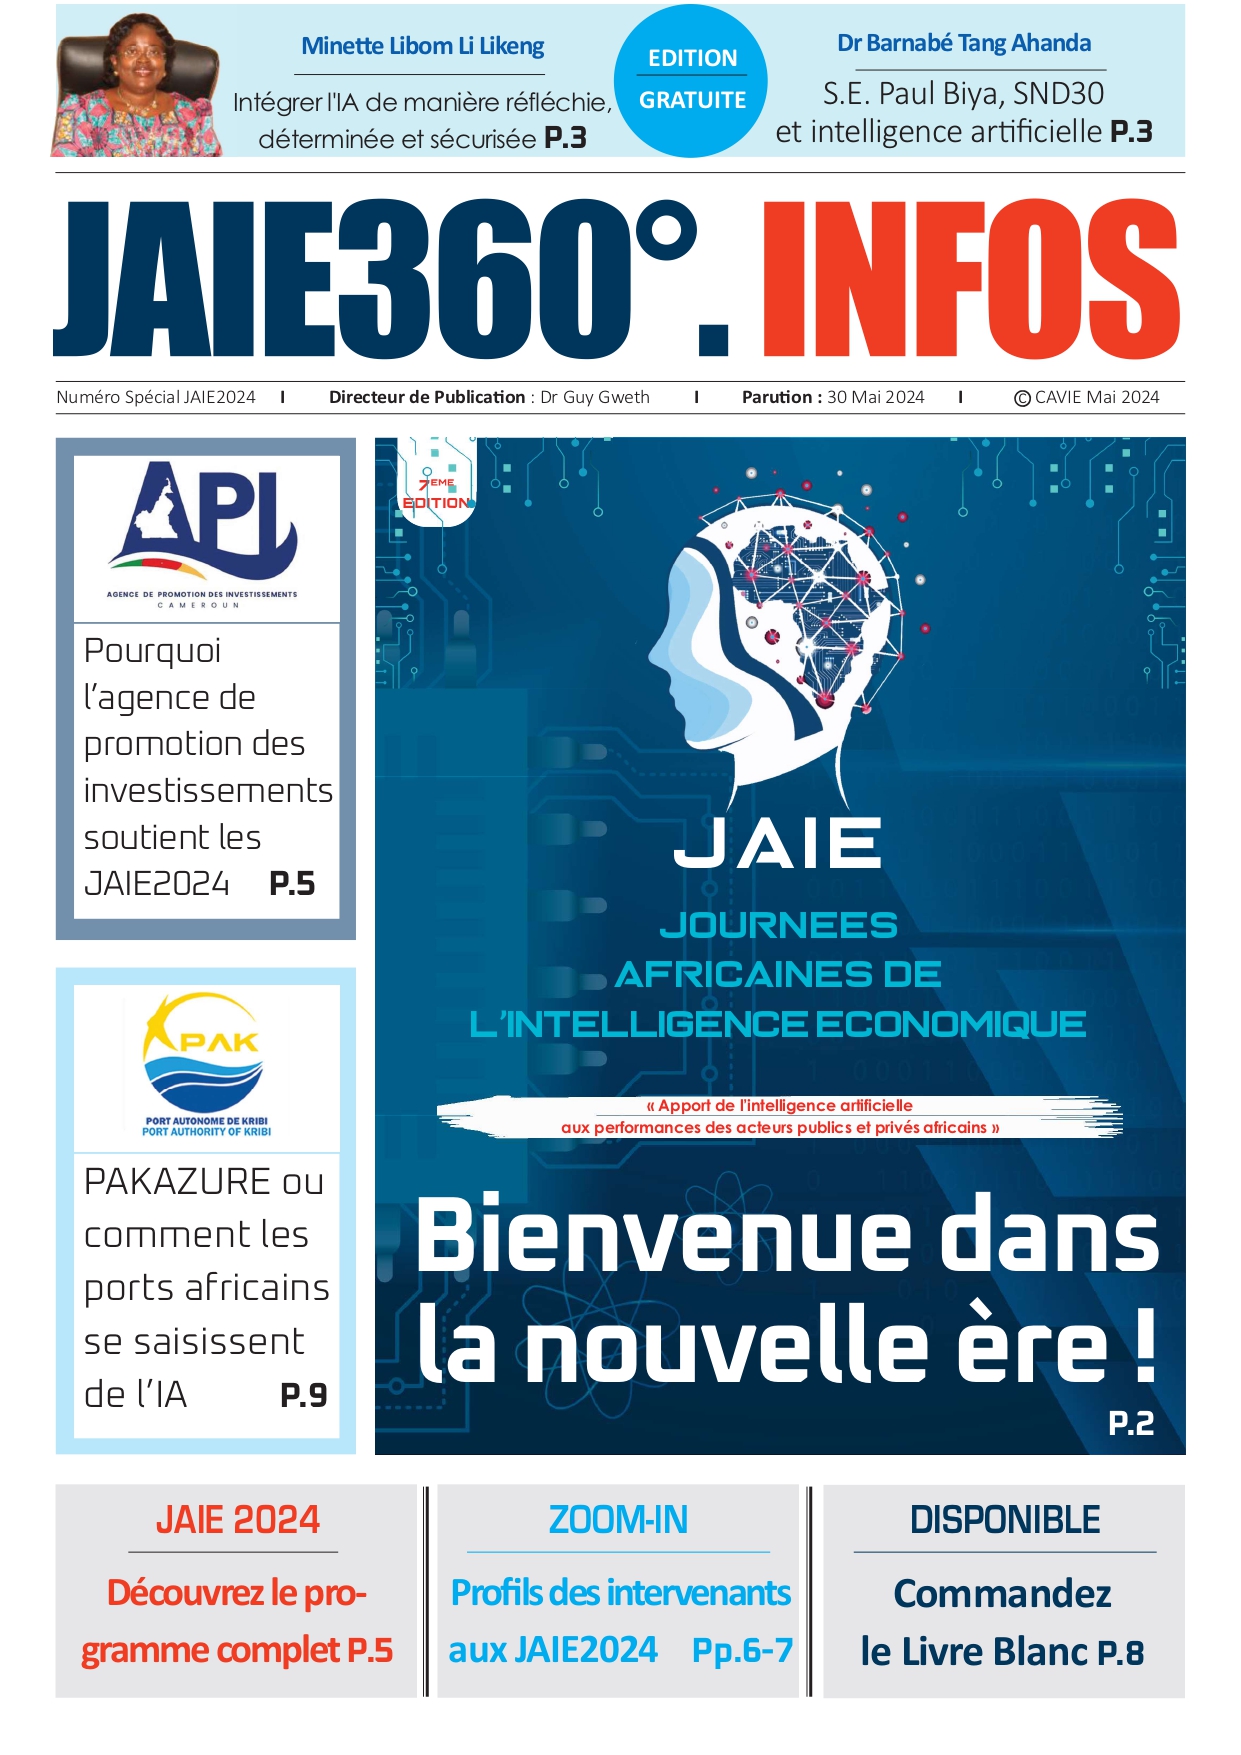 Lire la suite à propos de l’article JAIE 360 dégrés INFOS Intelligence Economique